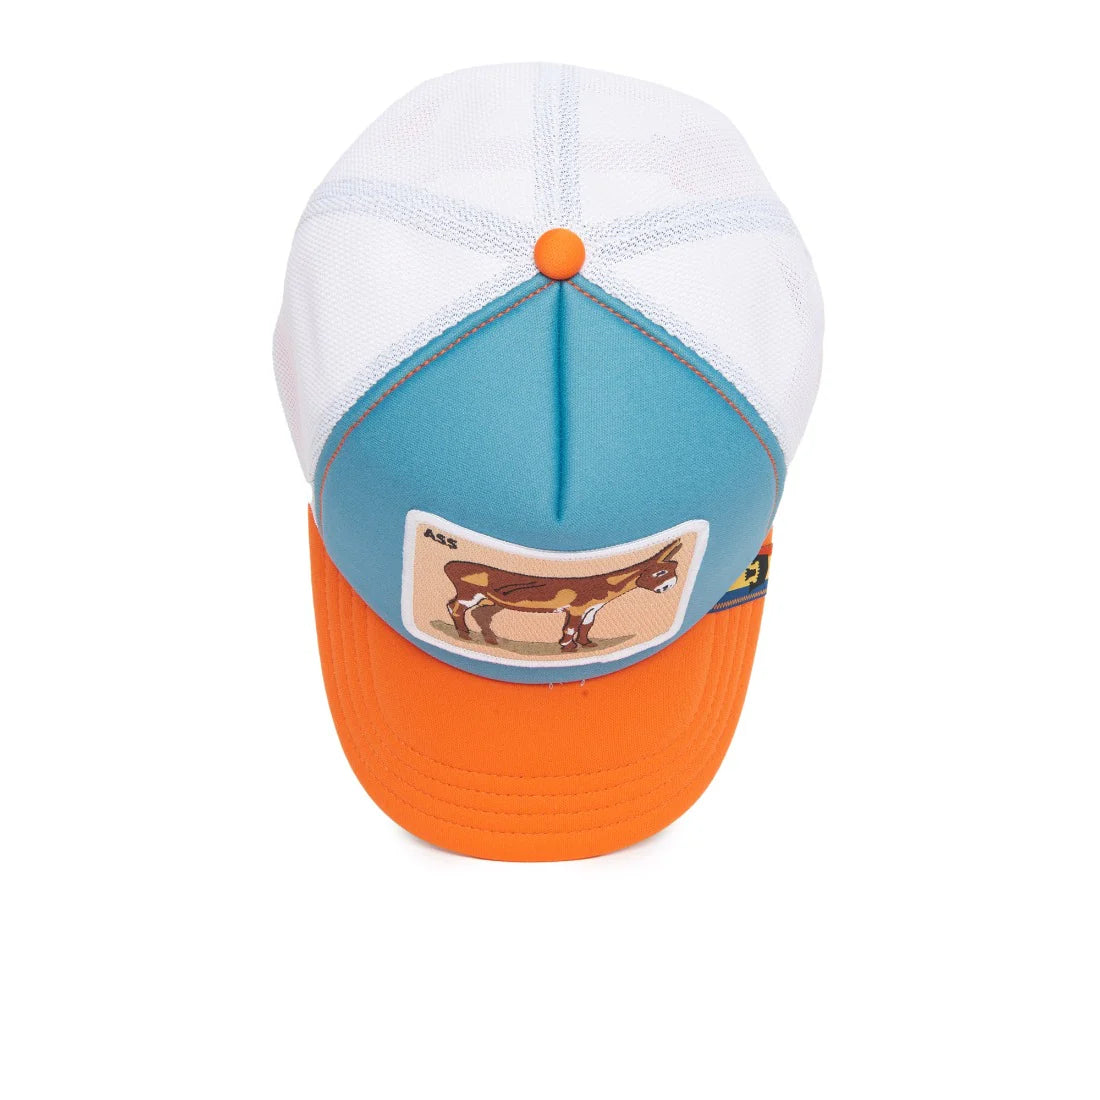 'Goorin Bros. First Ass Trucker Hat' in 'Teal' colour